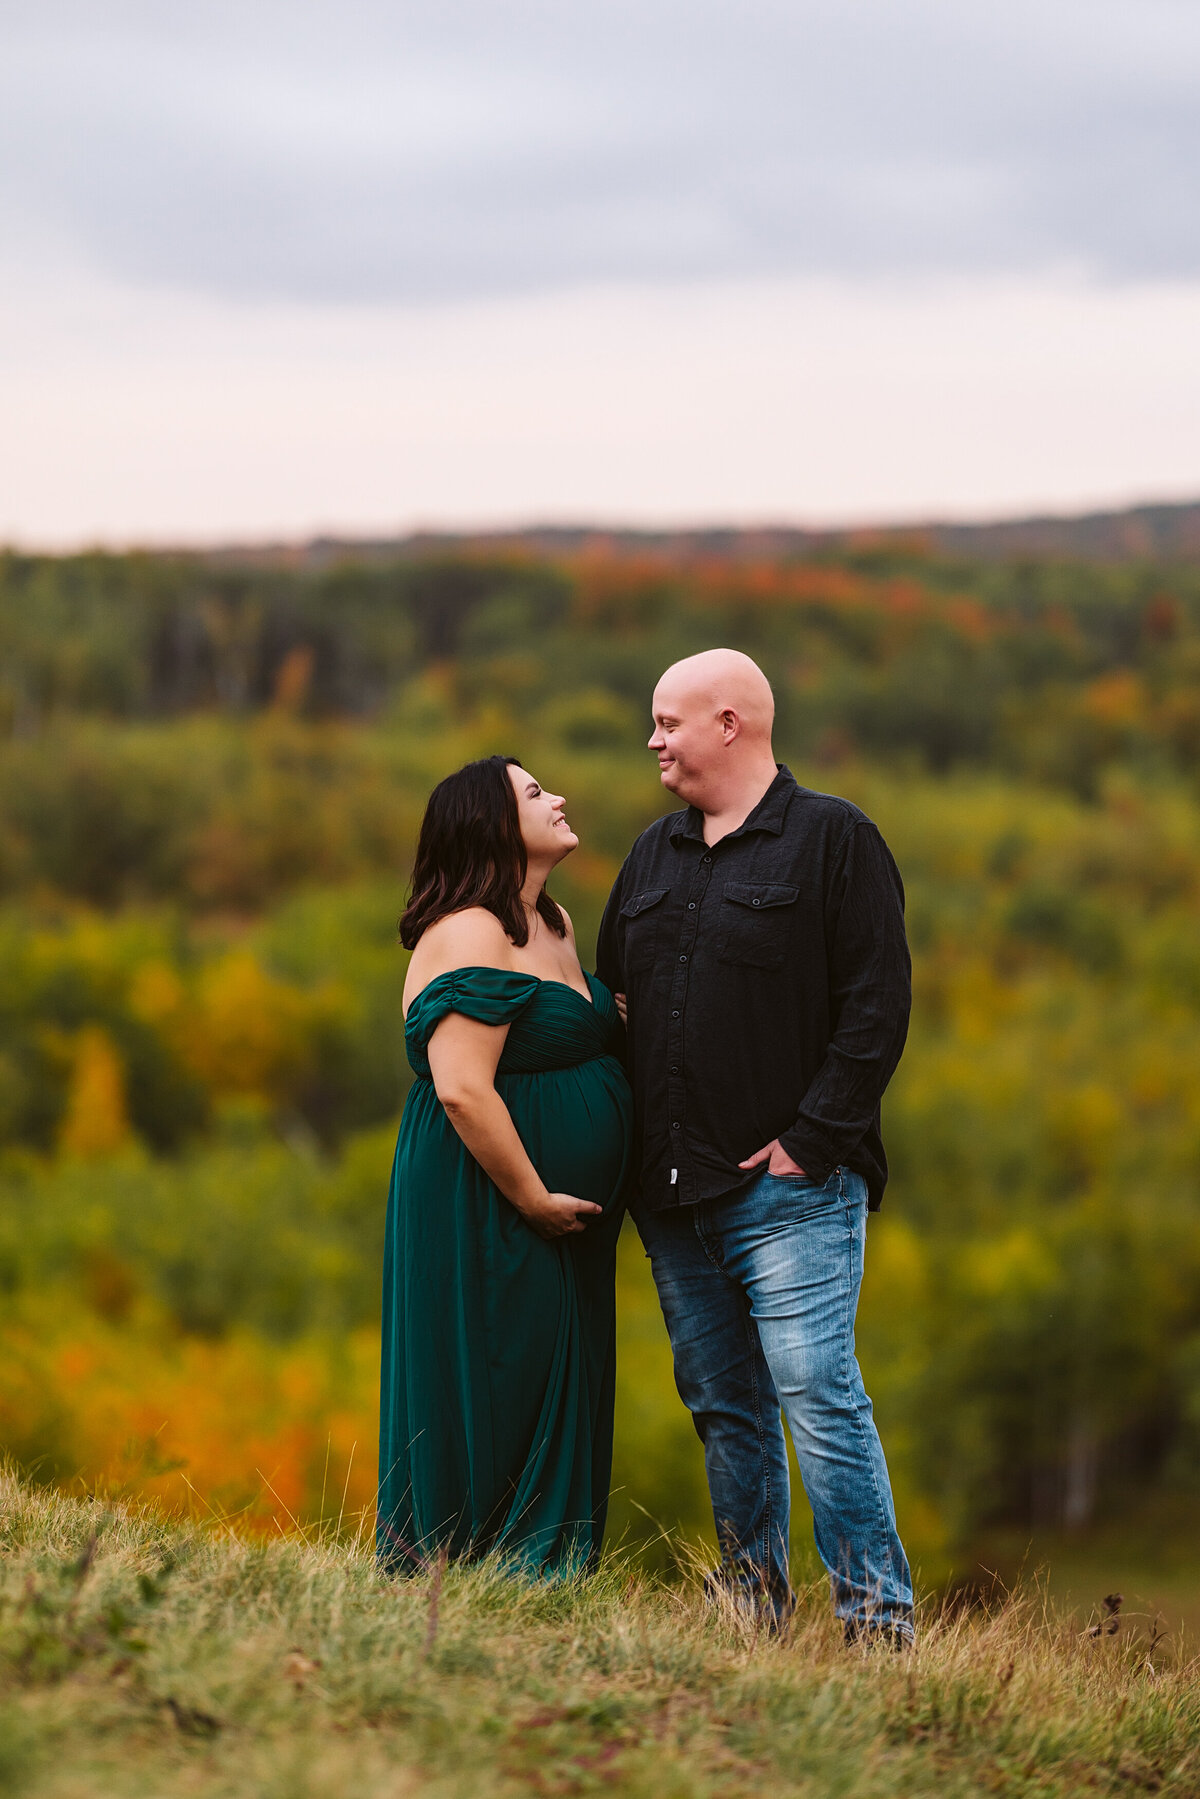 Minnesota-Alyssa Ashley Photography-Chelsie + Eric maternity session-9